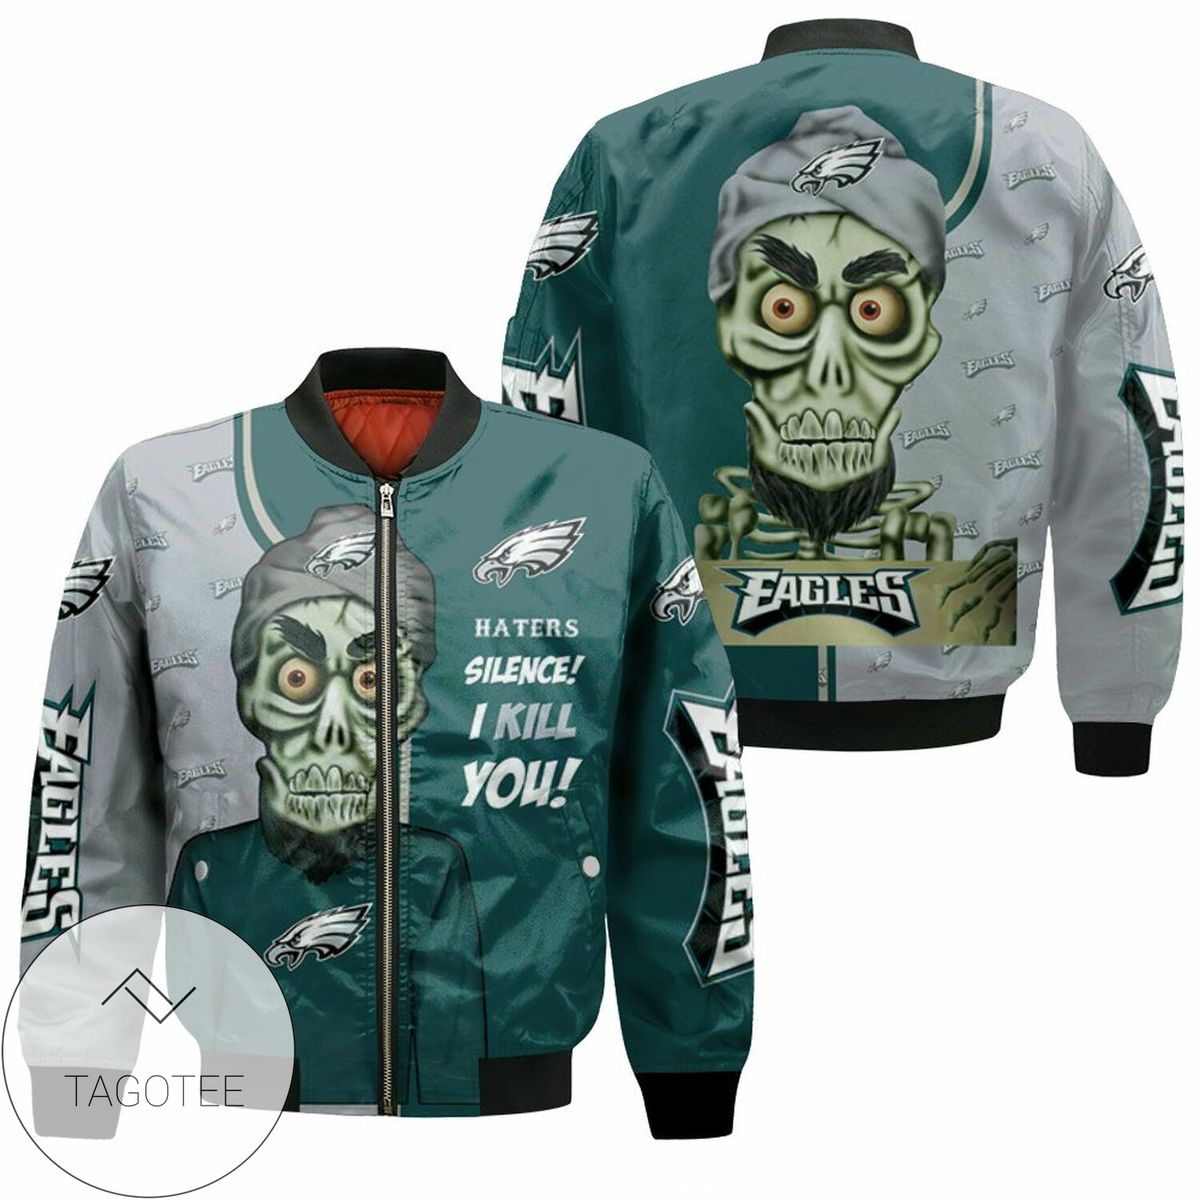 Philadelphia Eagles Haters Silence The Dead Terrorist 3D T Shirt Bomber Jacket